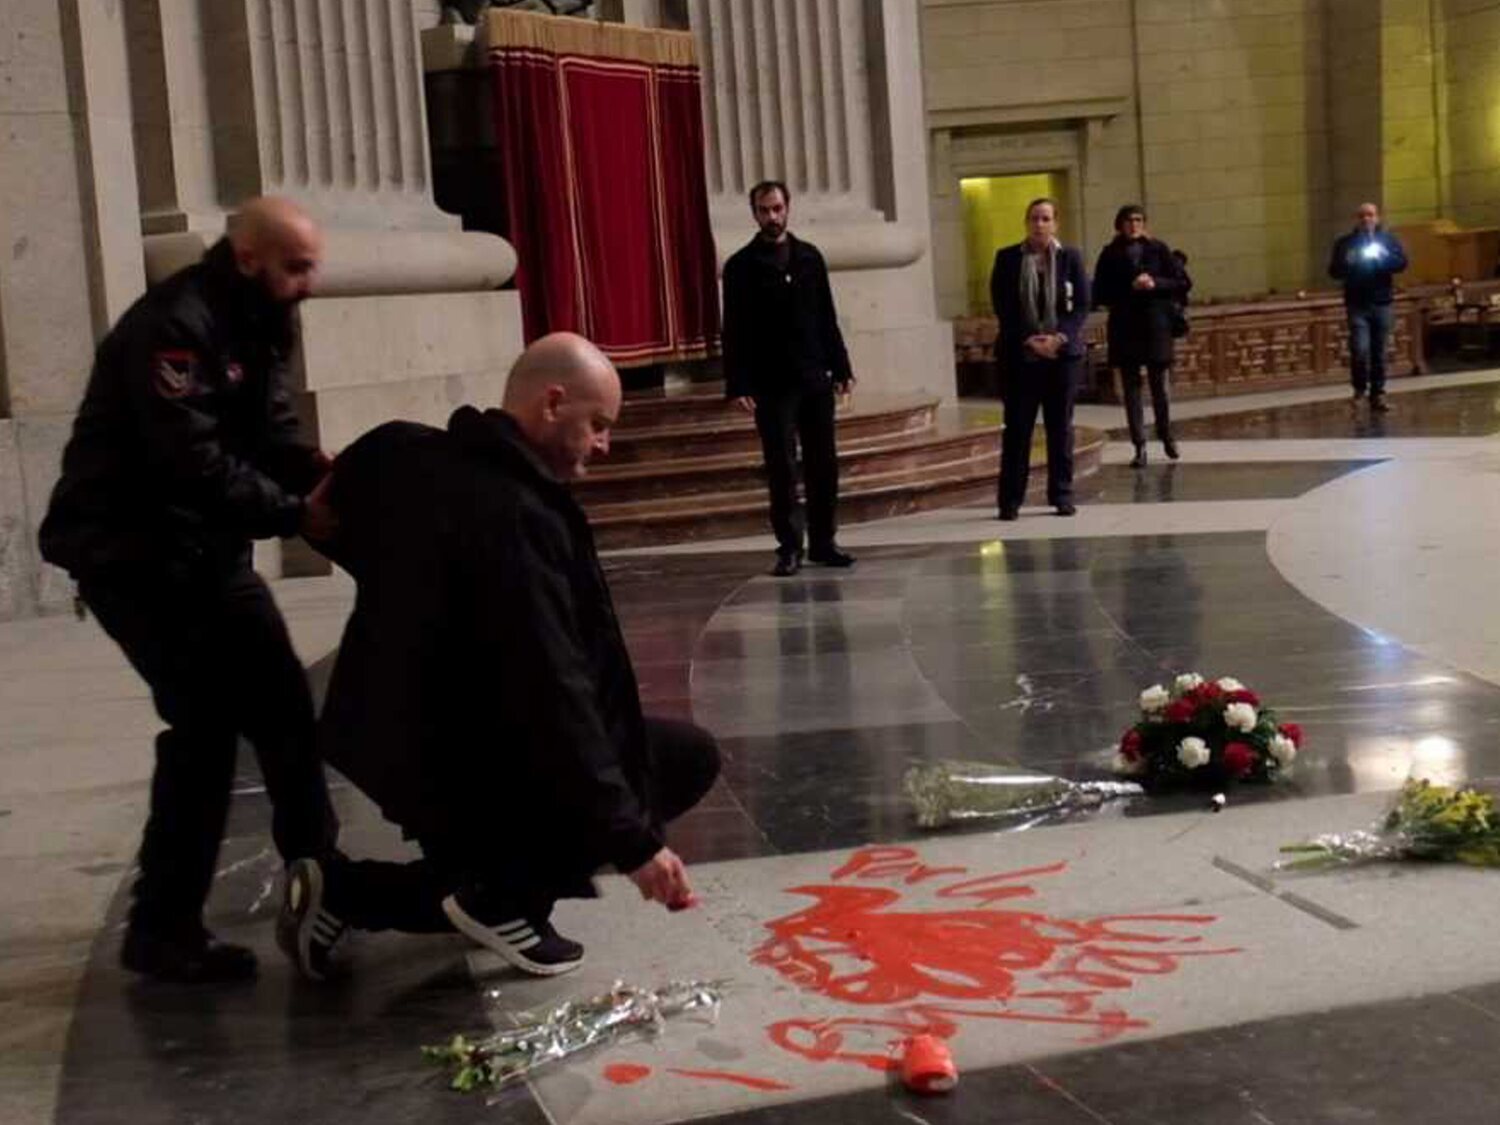 Absuelven al artista que pintó sobre la lápida de Franco en el Valle de los Caídos